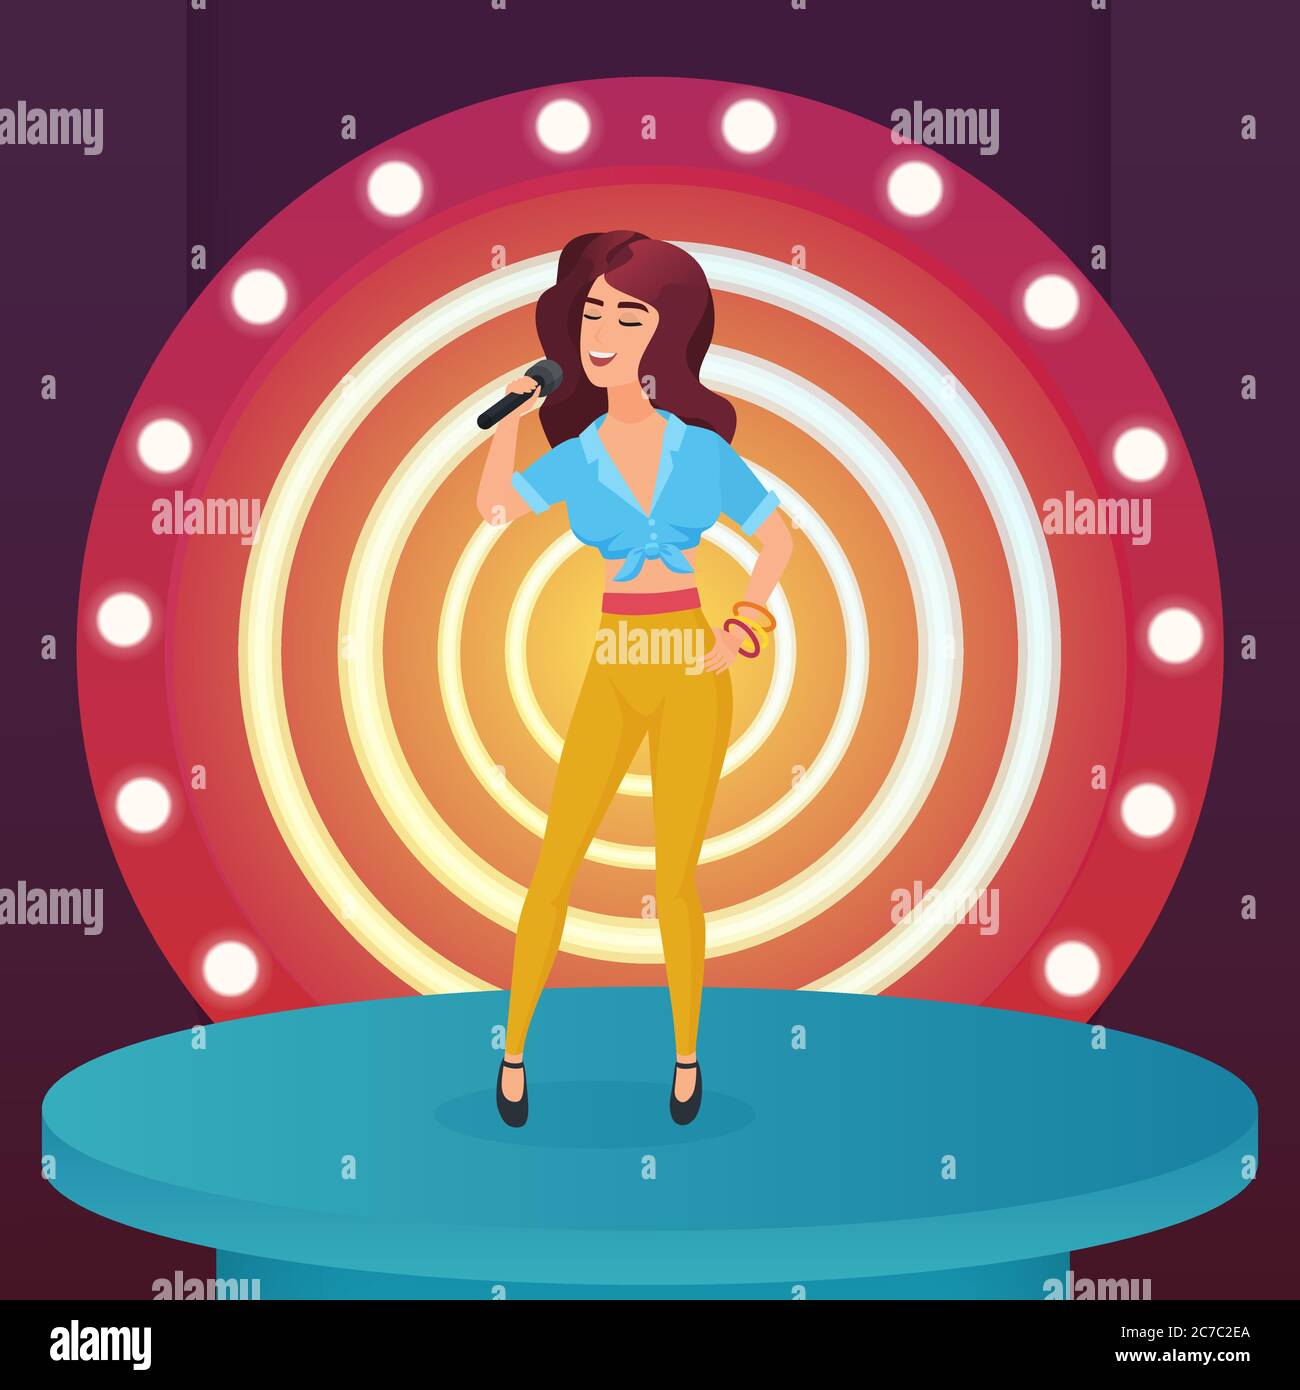 Femme chanteuse star chantant pop chanson avec microphone debout sur la scène moderne de cercle avec des lampes illustration vectorielle Illustration de Vecteur